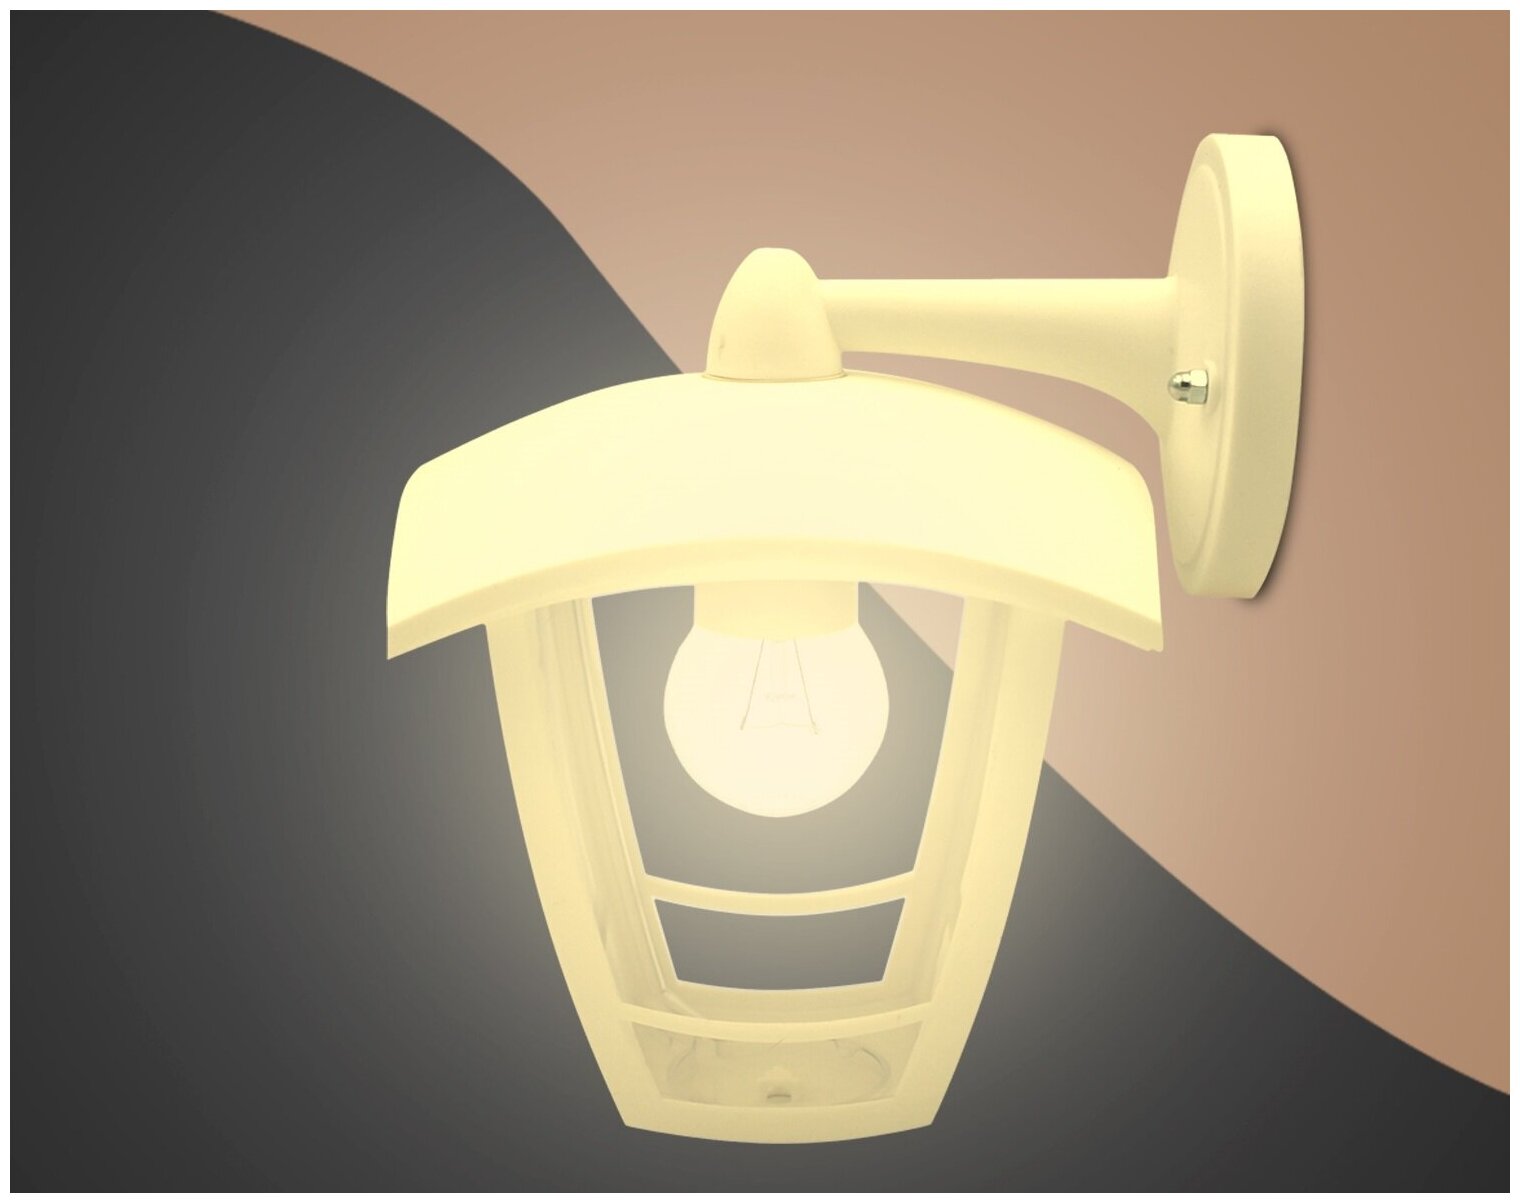 Декоративный садово-парковый светильник Дели 2 с направлением света вниз, Фонарь настенный НБУ 07-60-002 У1, Е27, IP44, 60Вт, 220В, белый